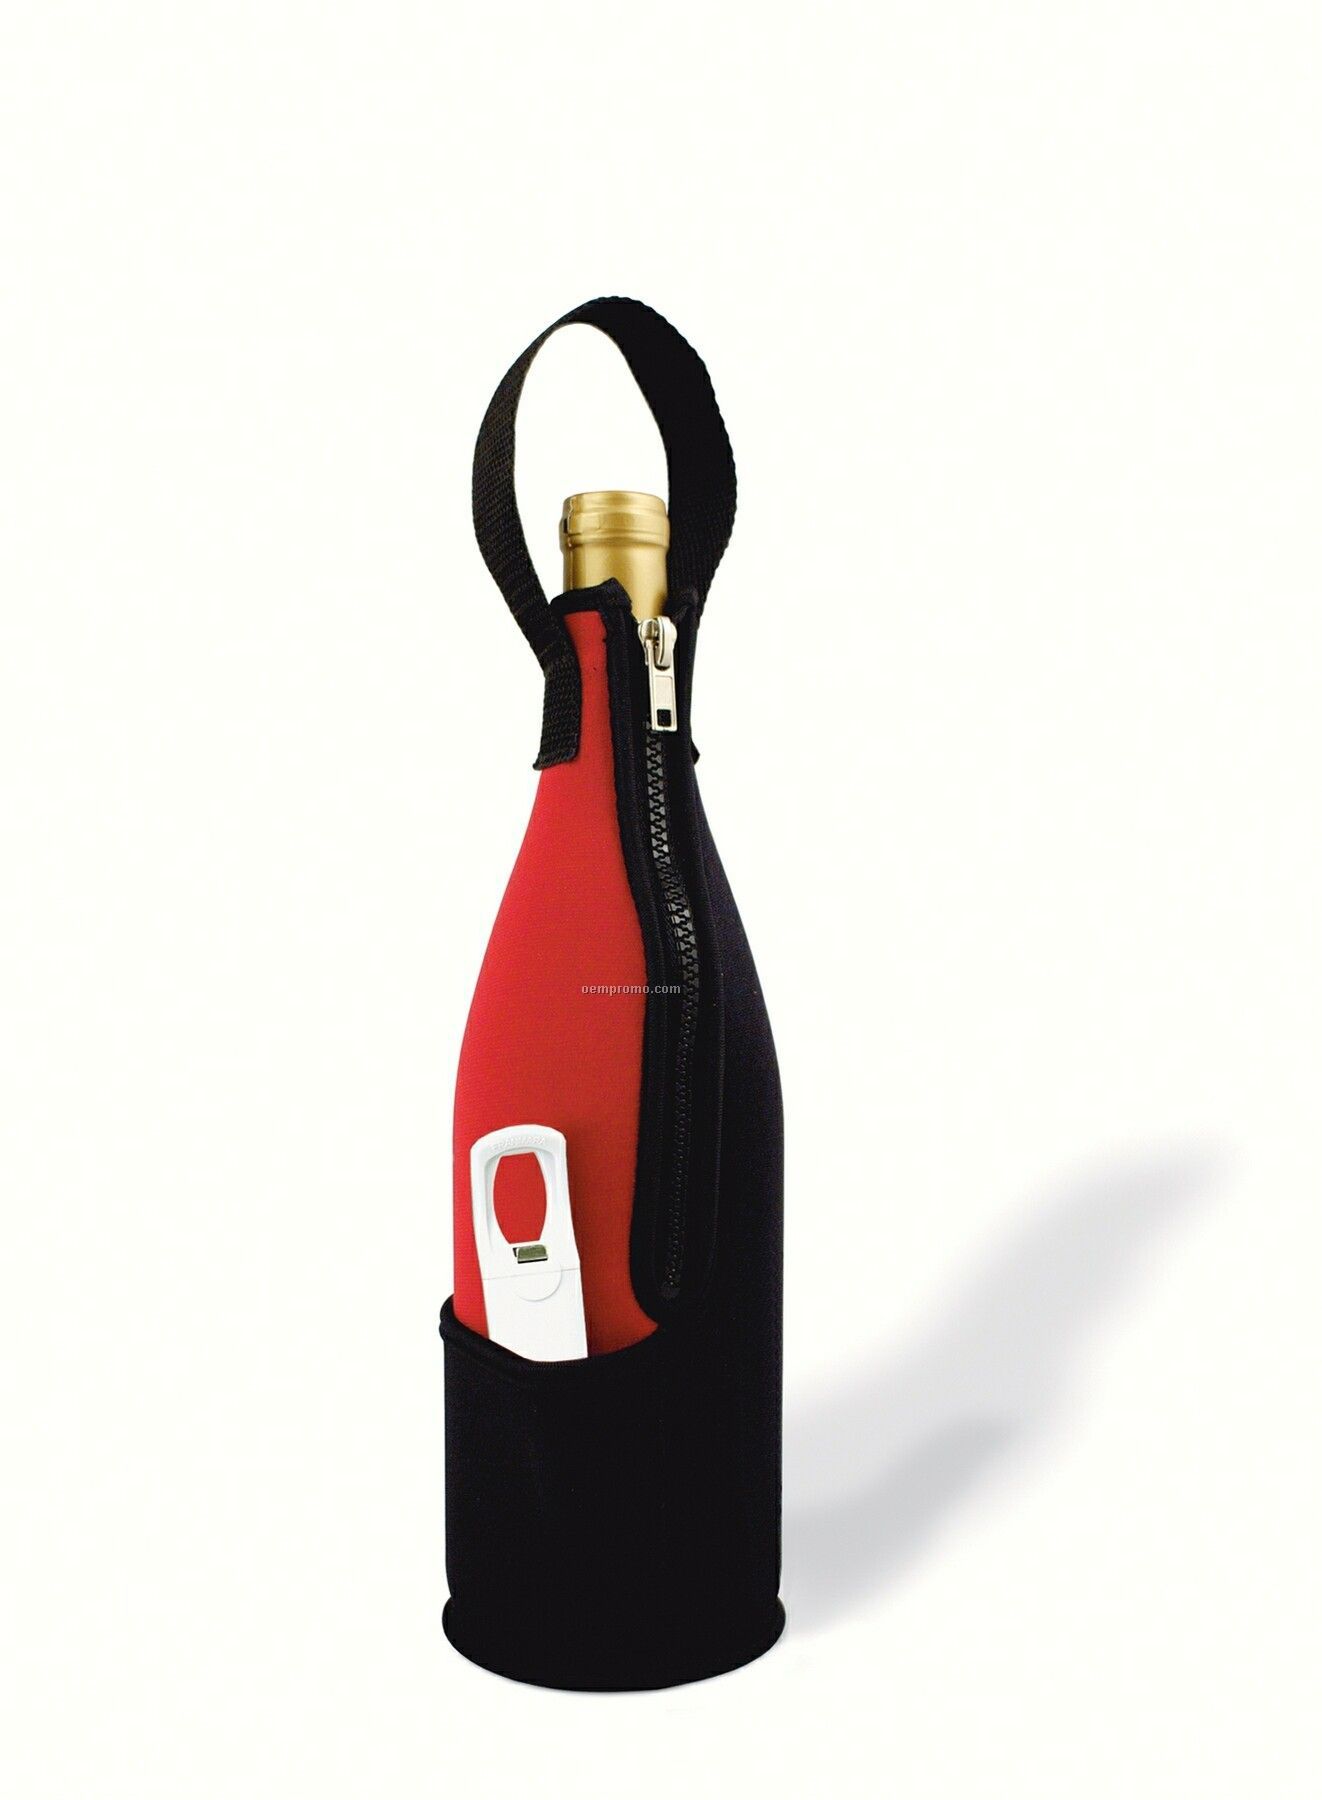 Zip-n-go Neoprene Wine Bag With Plastic Traveler`s Corkscrew